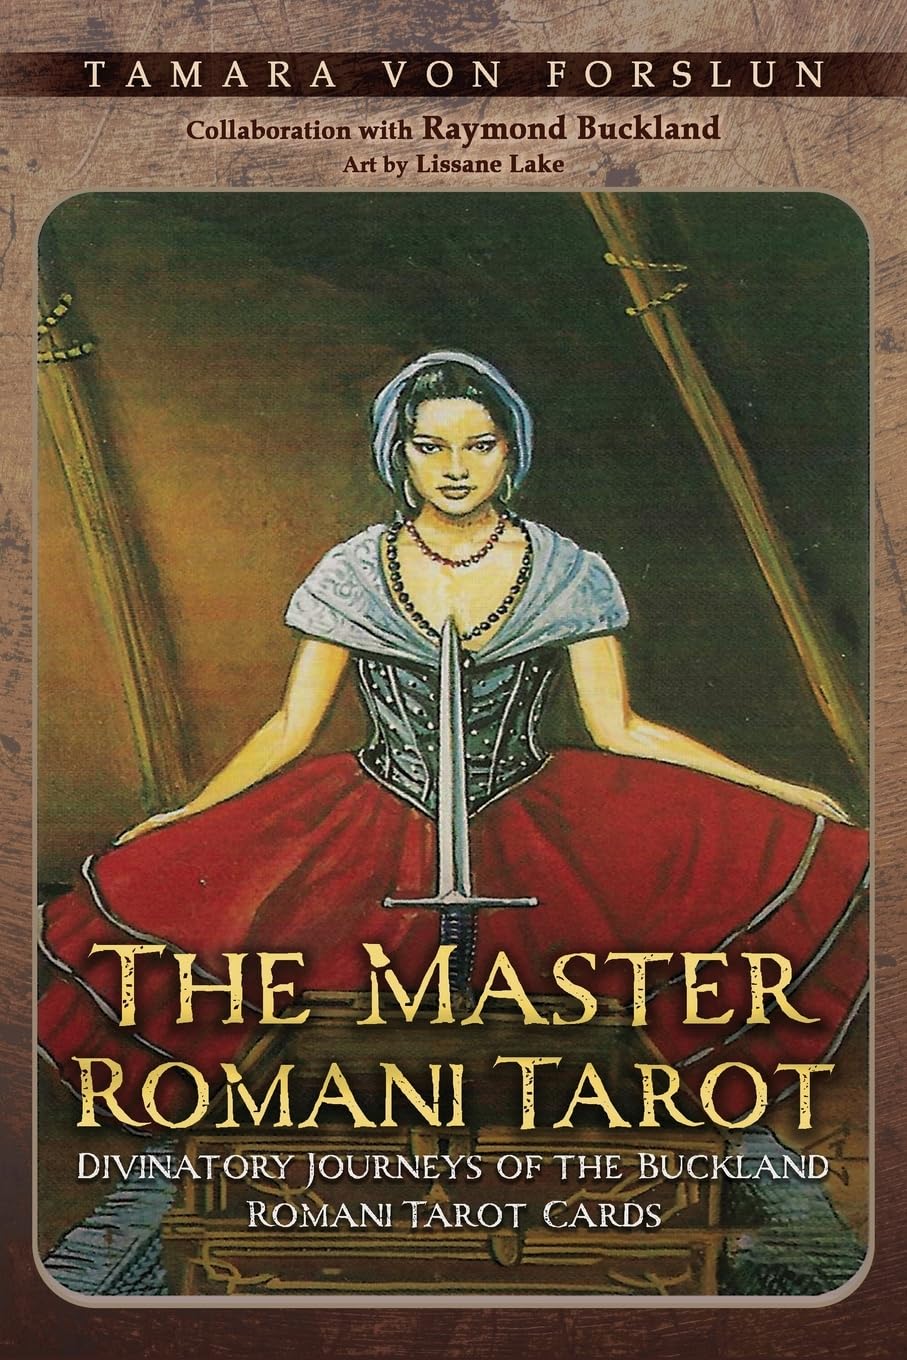 Unlock the Mysteries of the Buckland Romani Tarot with "The Master Romani Tarot"